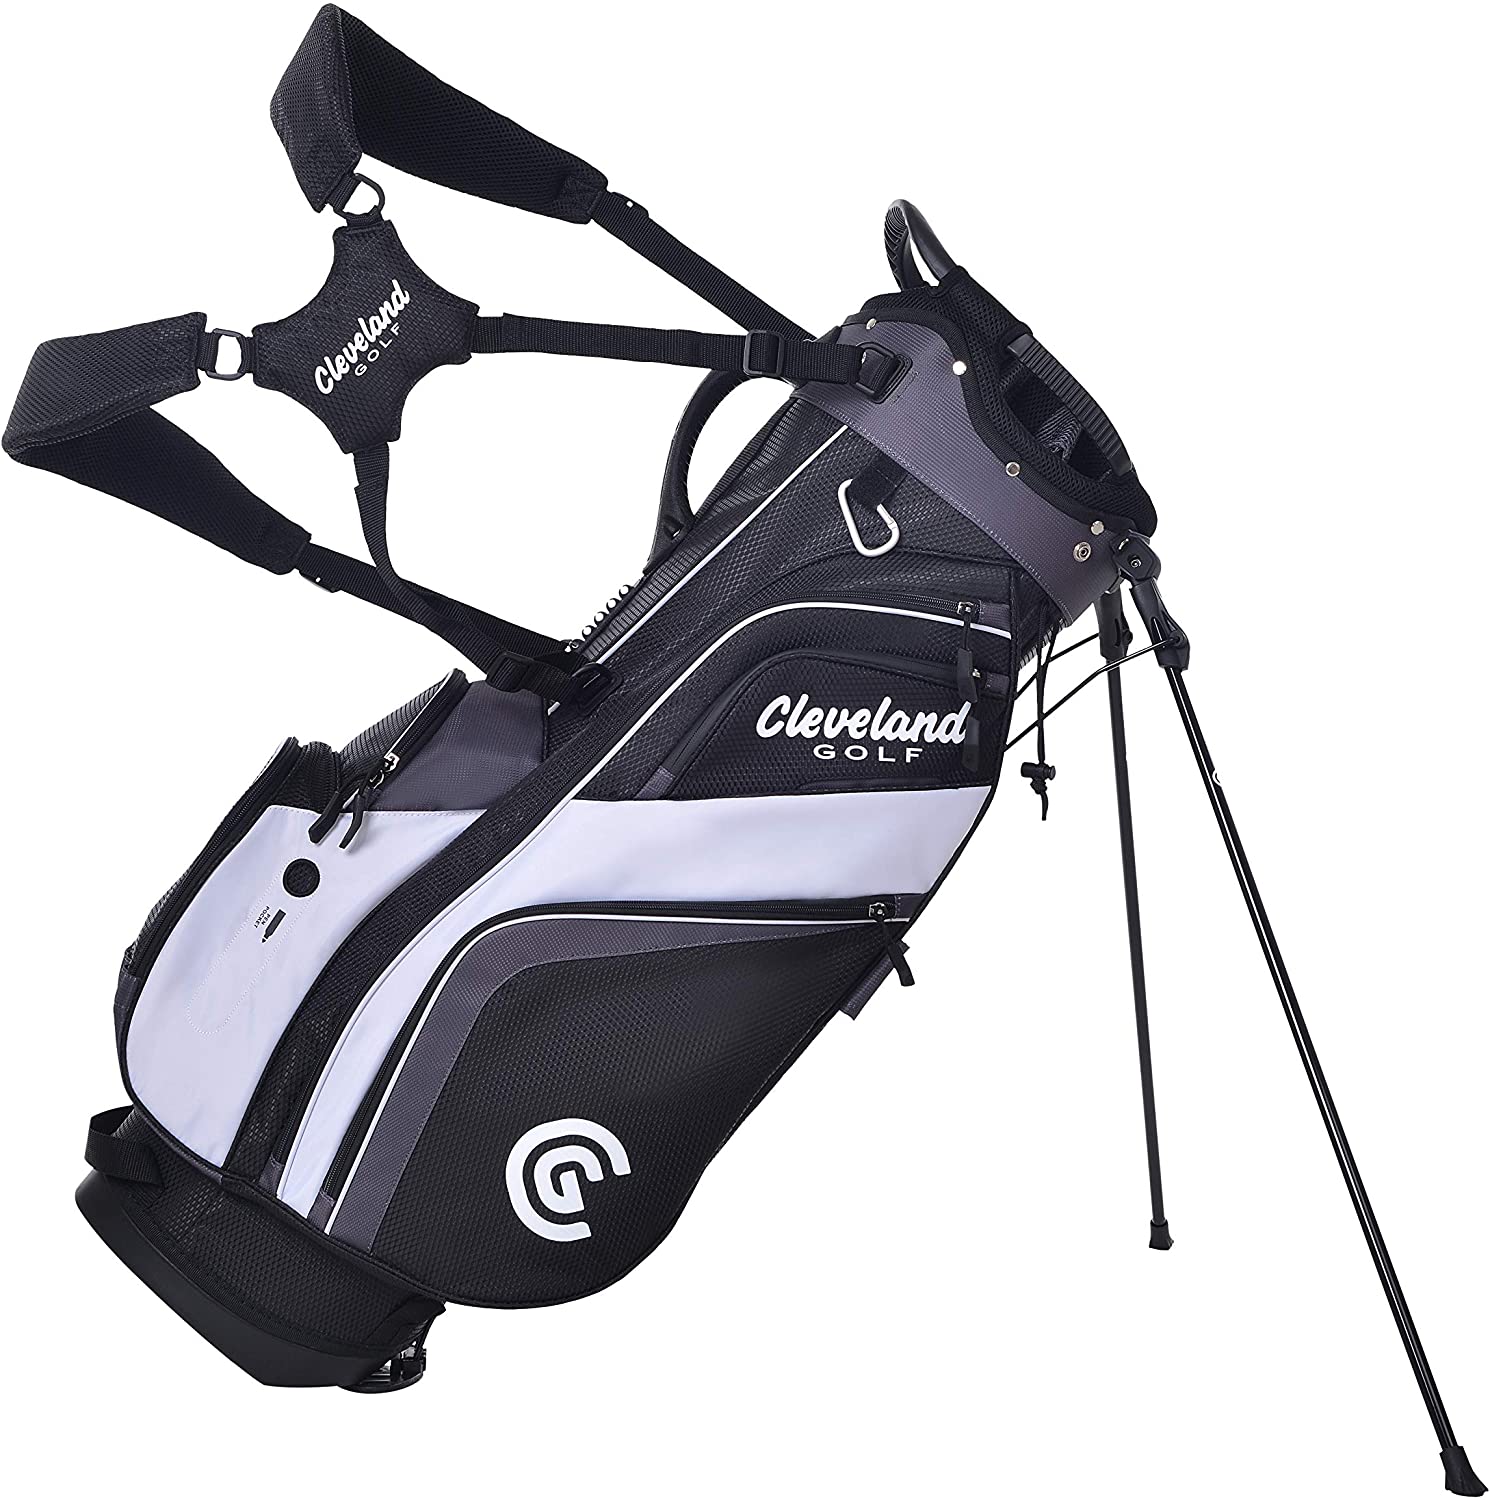 Cleveland Golf Insulated Cooler Waterproof Golf Bag, 14-Way